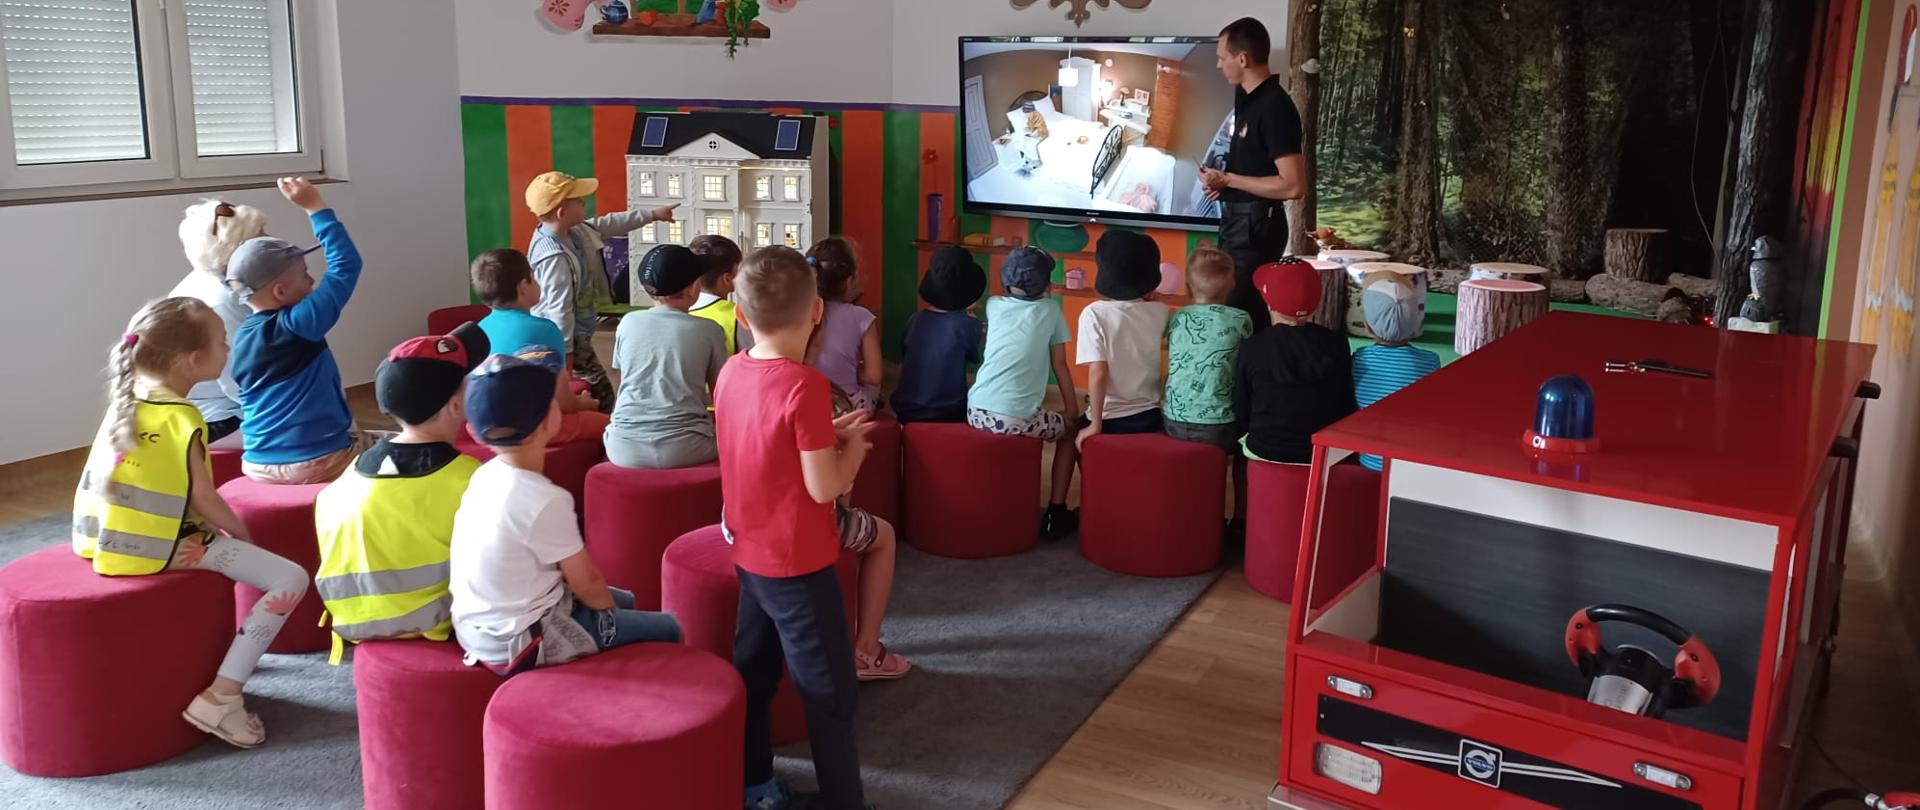 Na zdjęciu grupa dzieci słucha prezentacji na Sali edukacyjnej „Ognik”, którą prowadzi strażak PSP. Na telewizorze wyświetla się obraz z kamery umieszczonej w makiecie domu jednorodzinnego, po prawej stronie wóz strażacki dziecięcych rozmiarów.